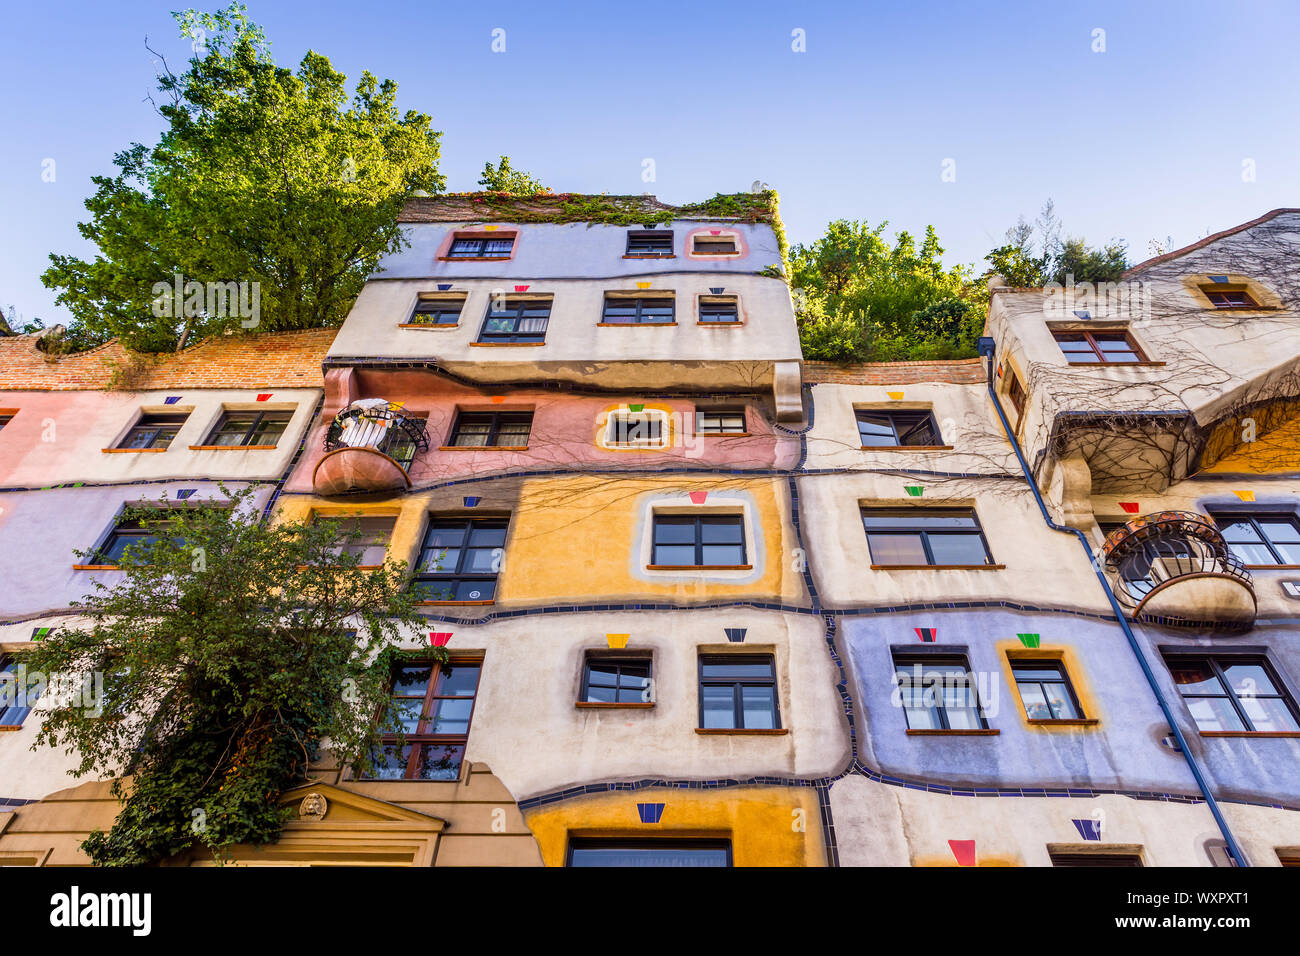 Les appartements colorés de fronts dans la maison Hundertwasser, Lowengasse, Vienne, Autriche. Banque D'Images